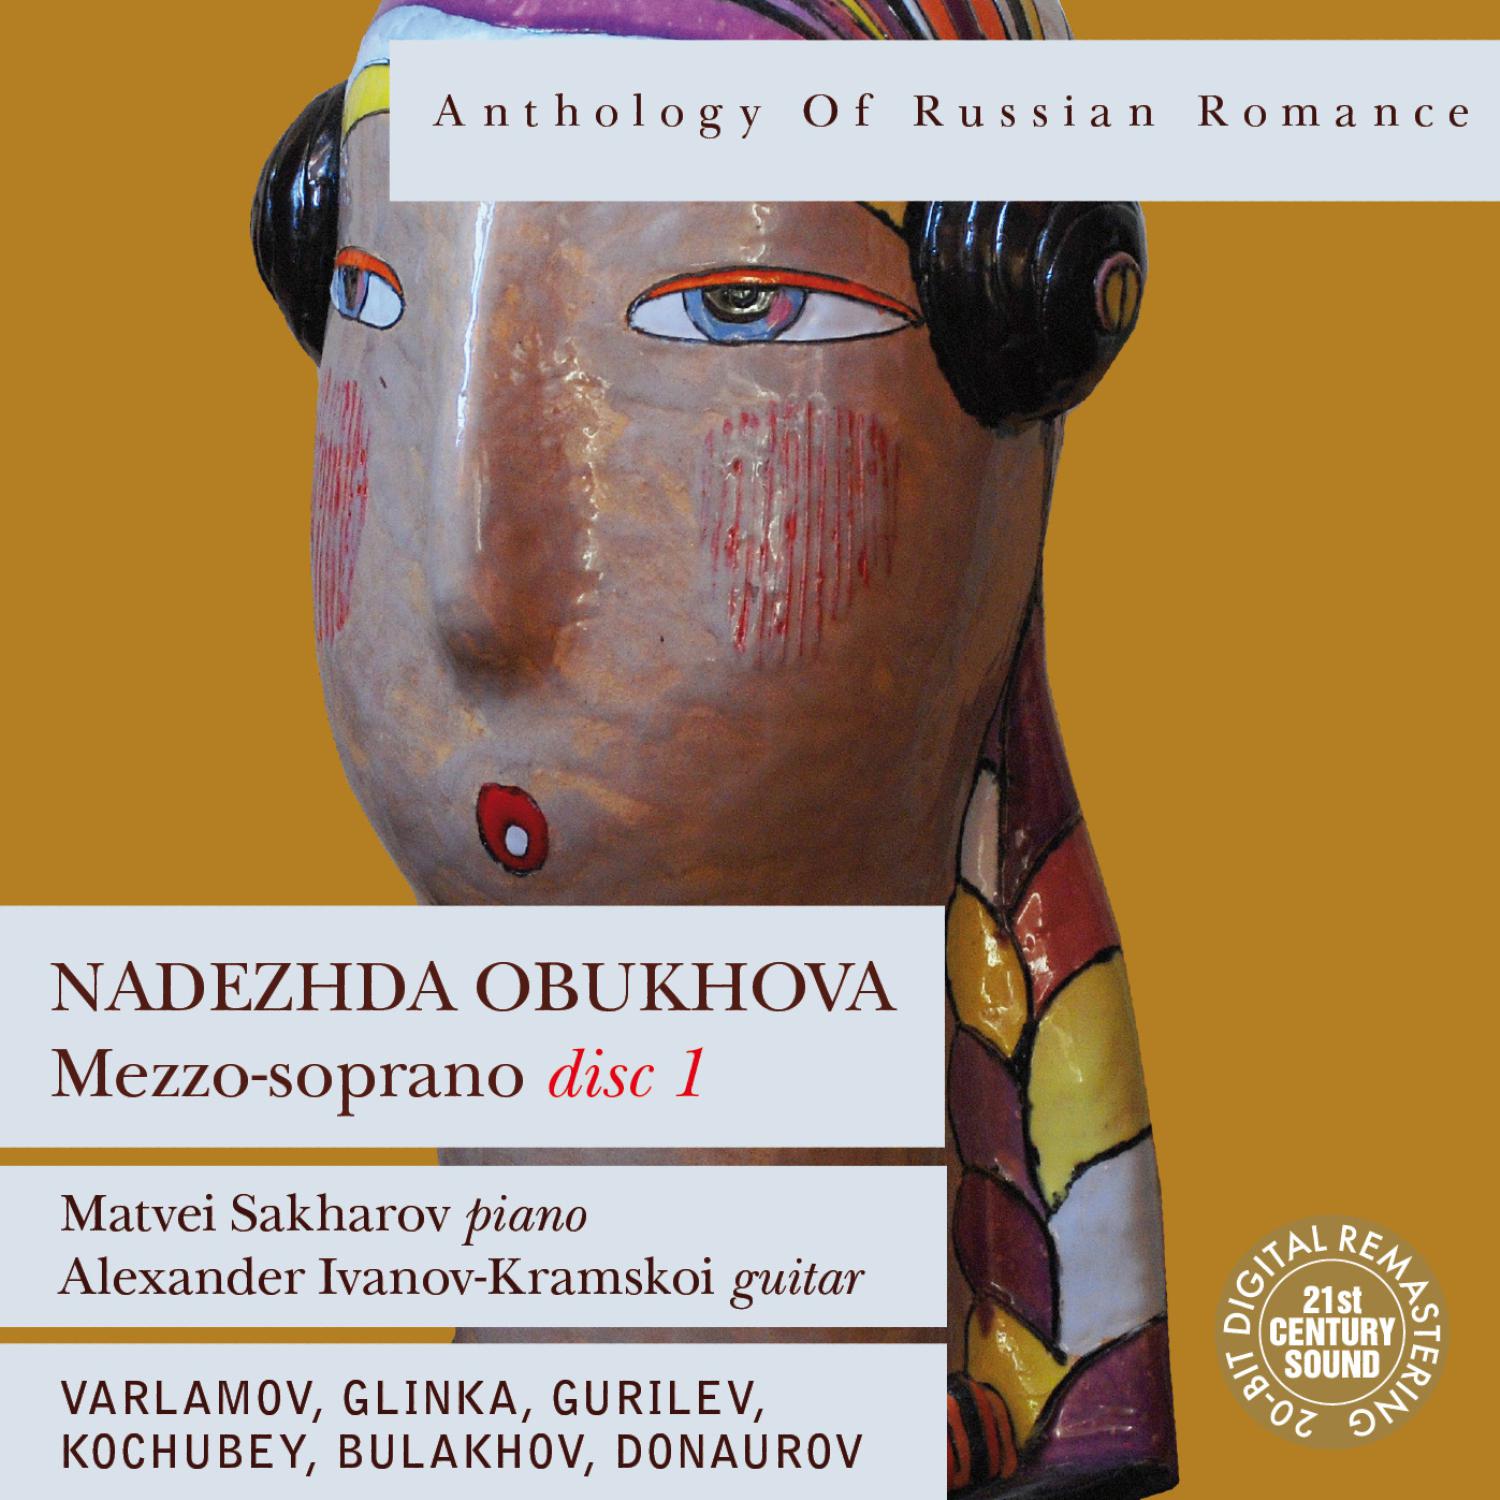 Nadezhda Obukhova - Nichego Mne na Svete ne Nado (We Need Nothing in This World)